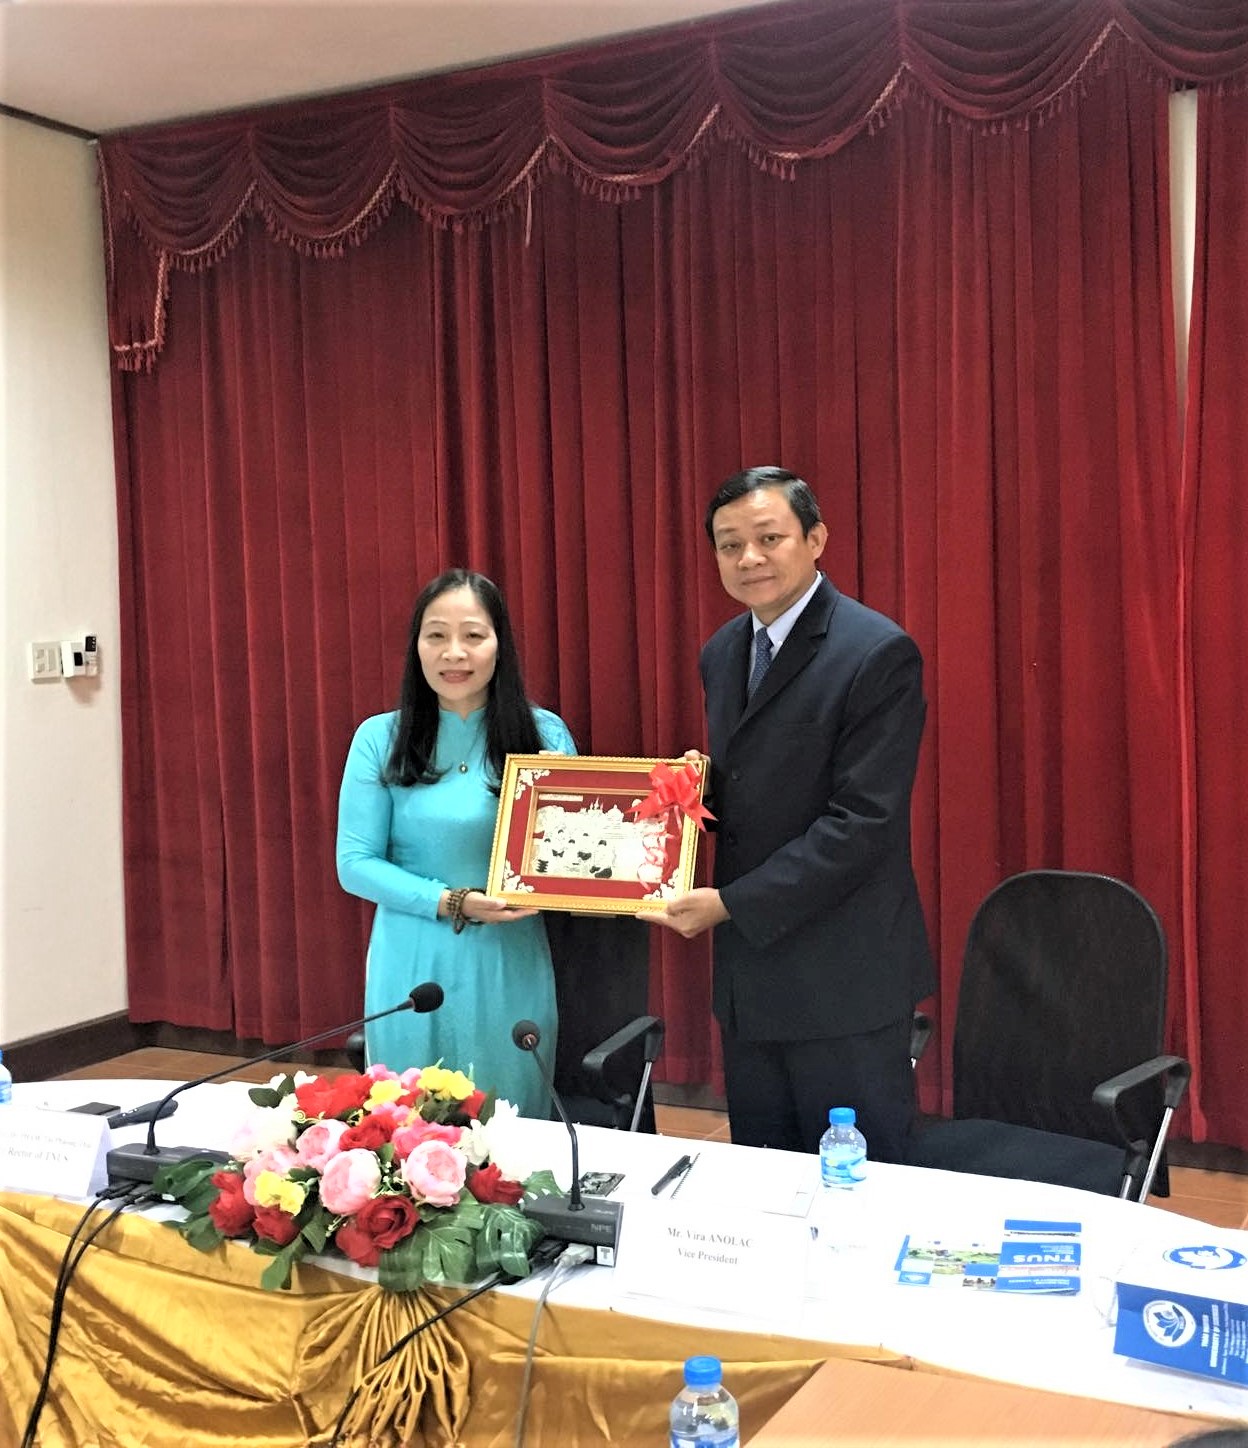 PGS. TS. Phạm Thị Phương Thái và ông Virta Anolac đã tặng những sản phẩm đặc trưng của hai Trường và địa phương làm quà lưu niệm trong lần đầu gặp mặt